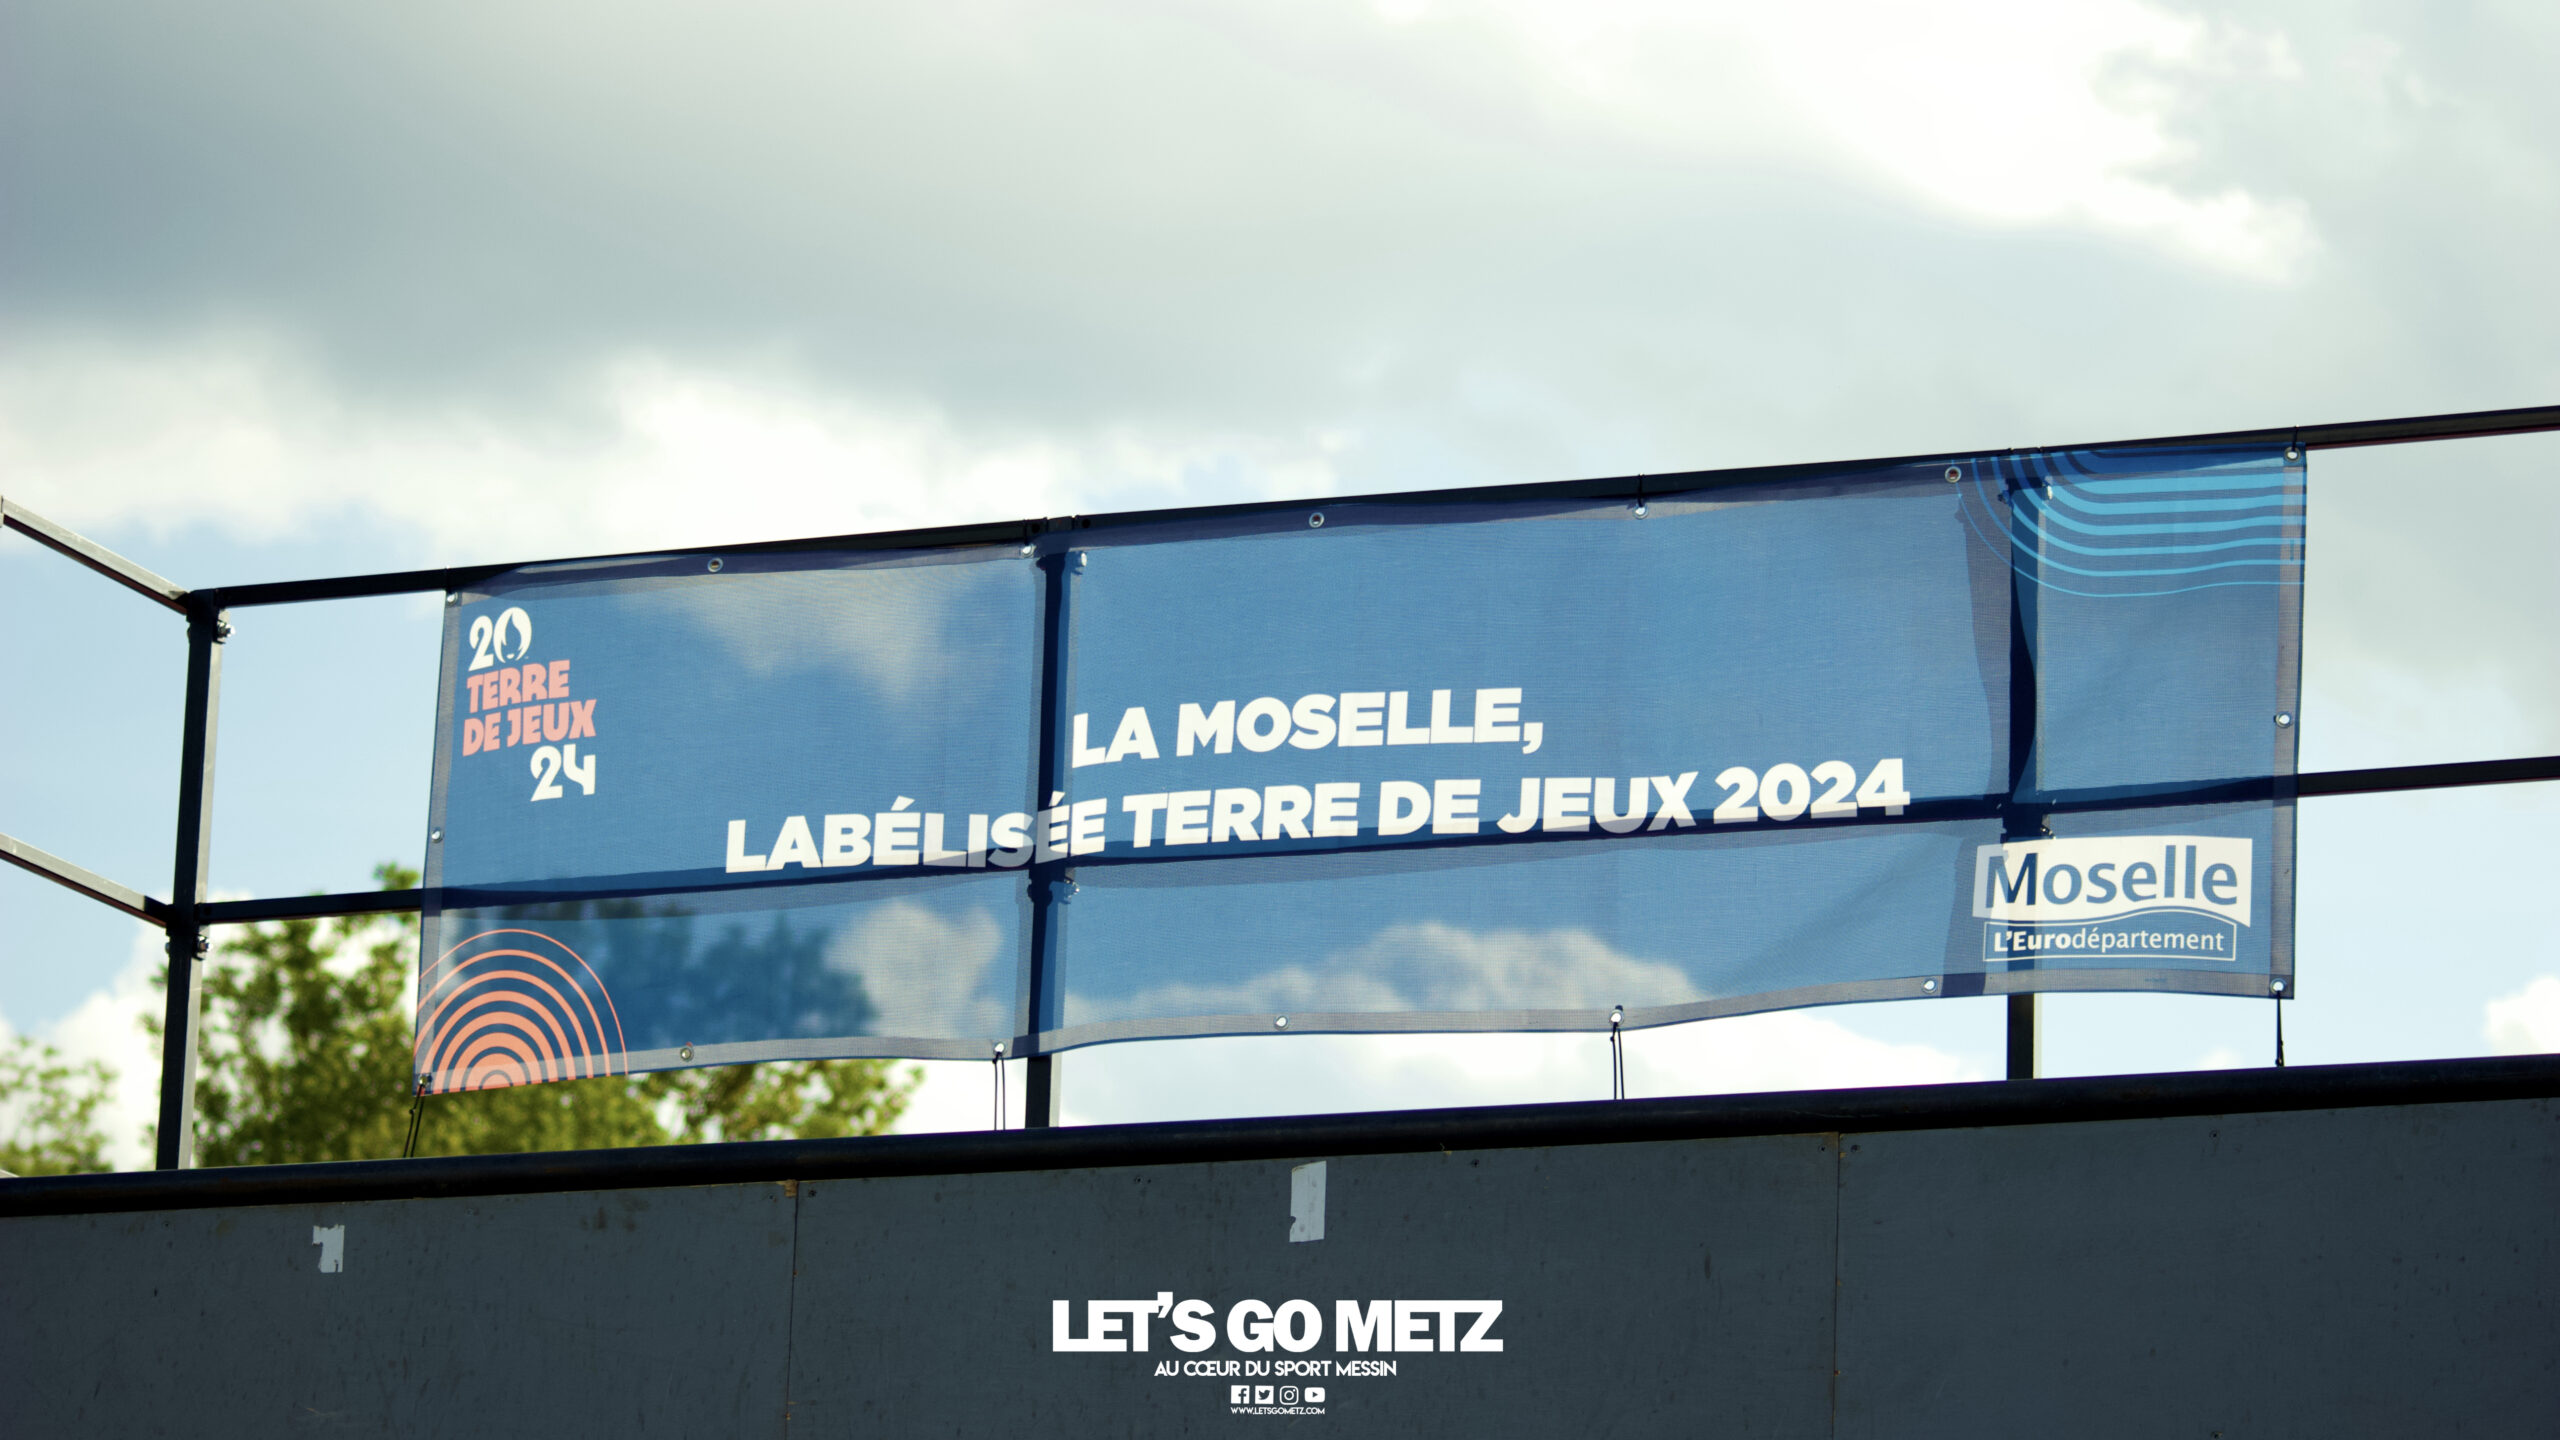  Metz au cœur des Jeux Olympiques 2024